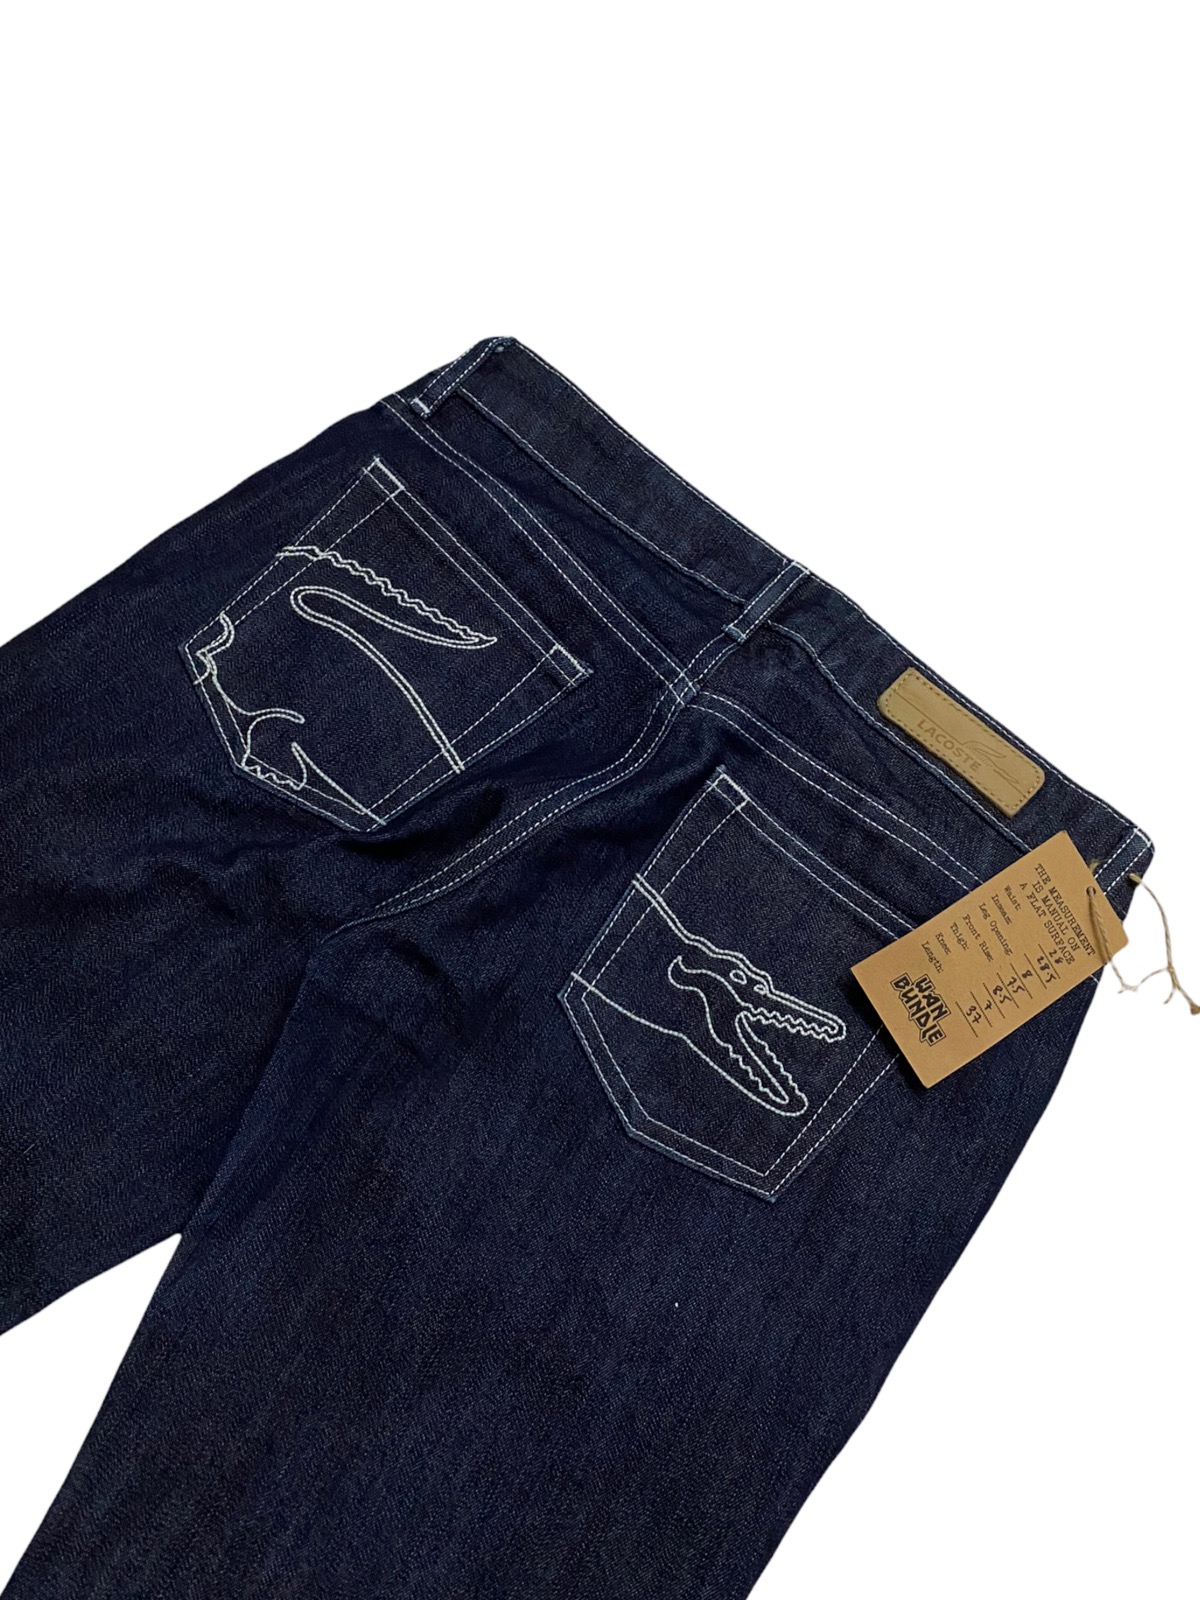 Women Lacoste Jeans Denim Made in Japan - 1